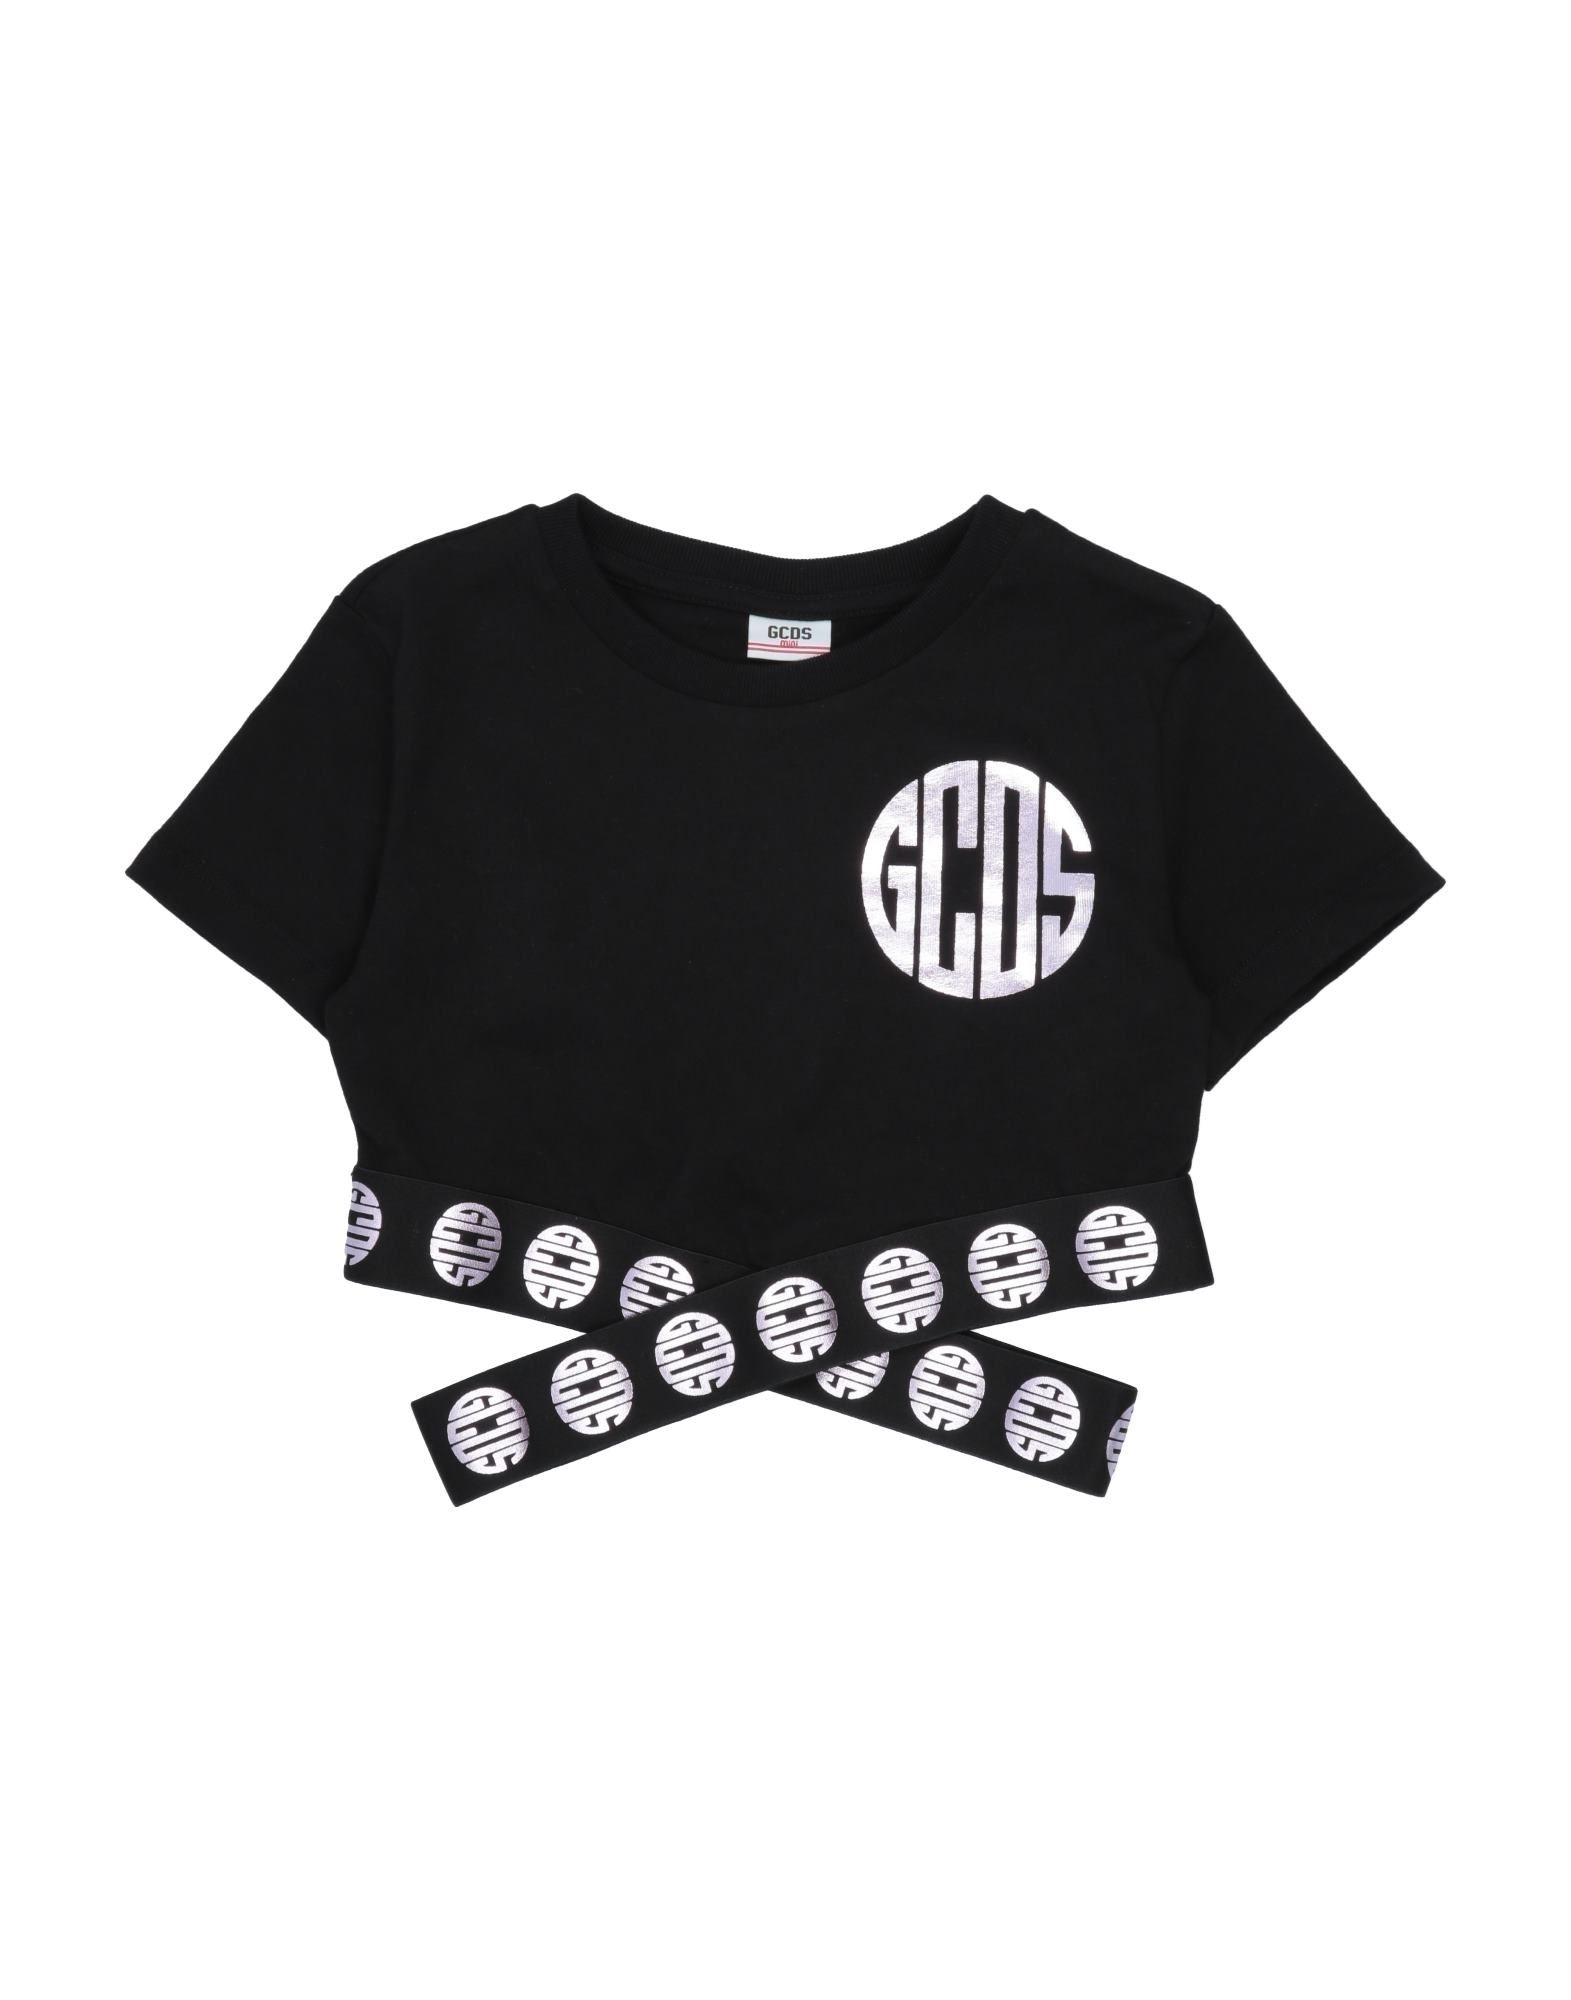 Gcds Mini Kids'  T-shirts In Black